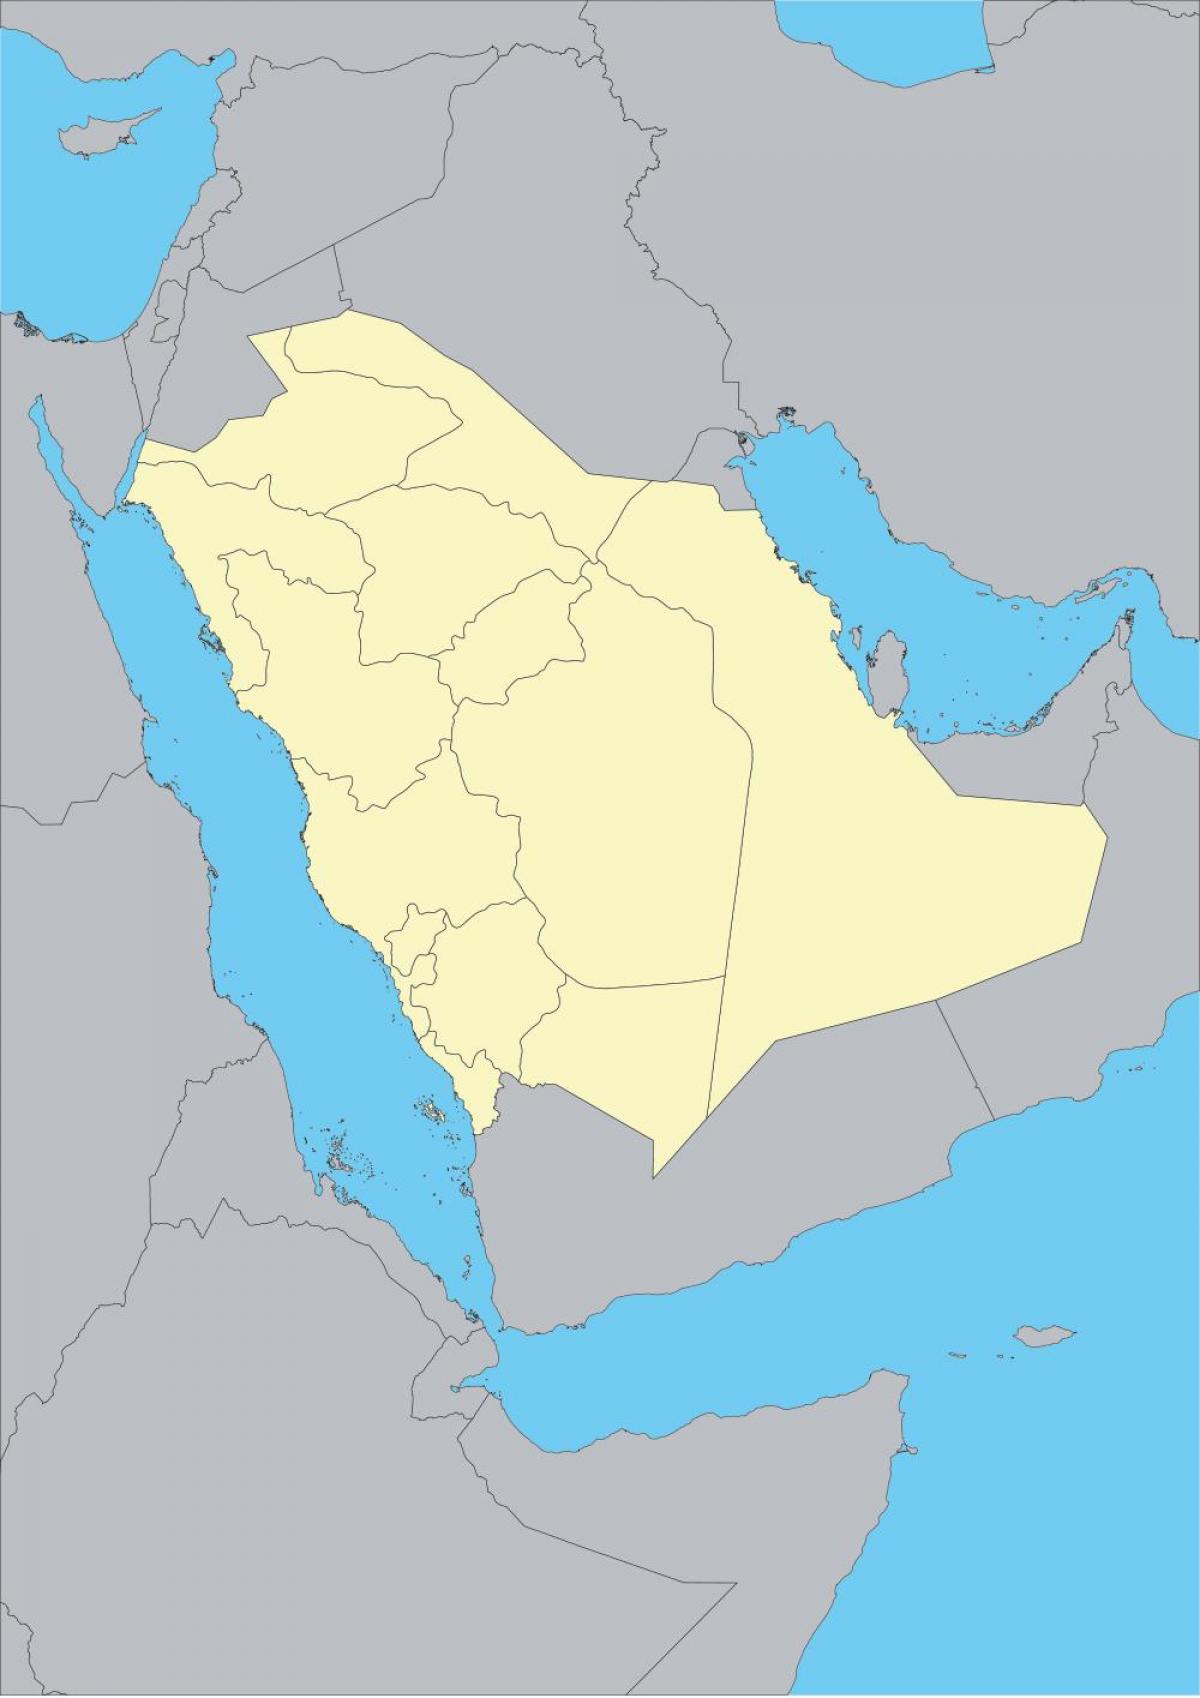 नक्शा सऊदी अरब की रूपरेखा